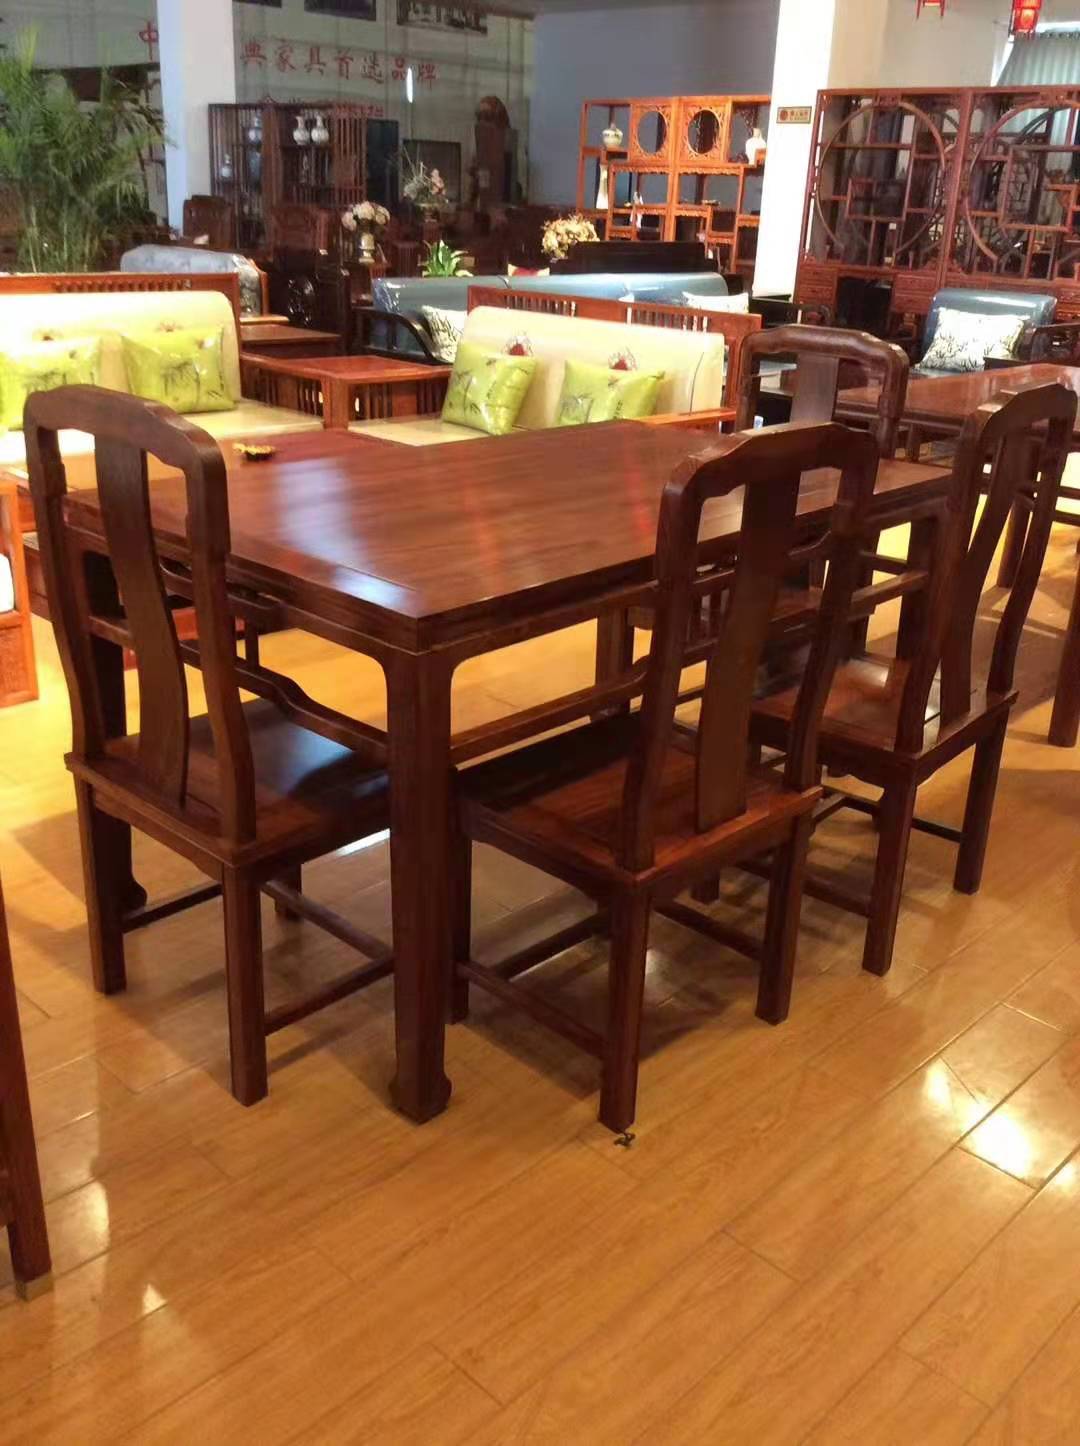 新中式 新中式餐桌6件套 浙江东阳新中式家具批发厂家 红木家具餐台 新中式餐桌6件套红木餐台